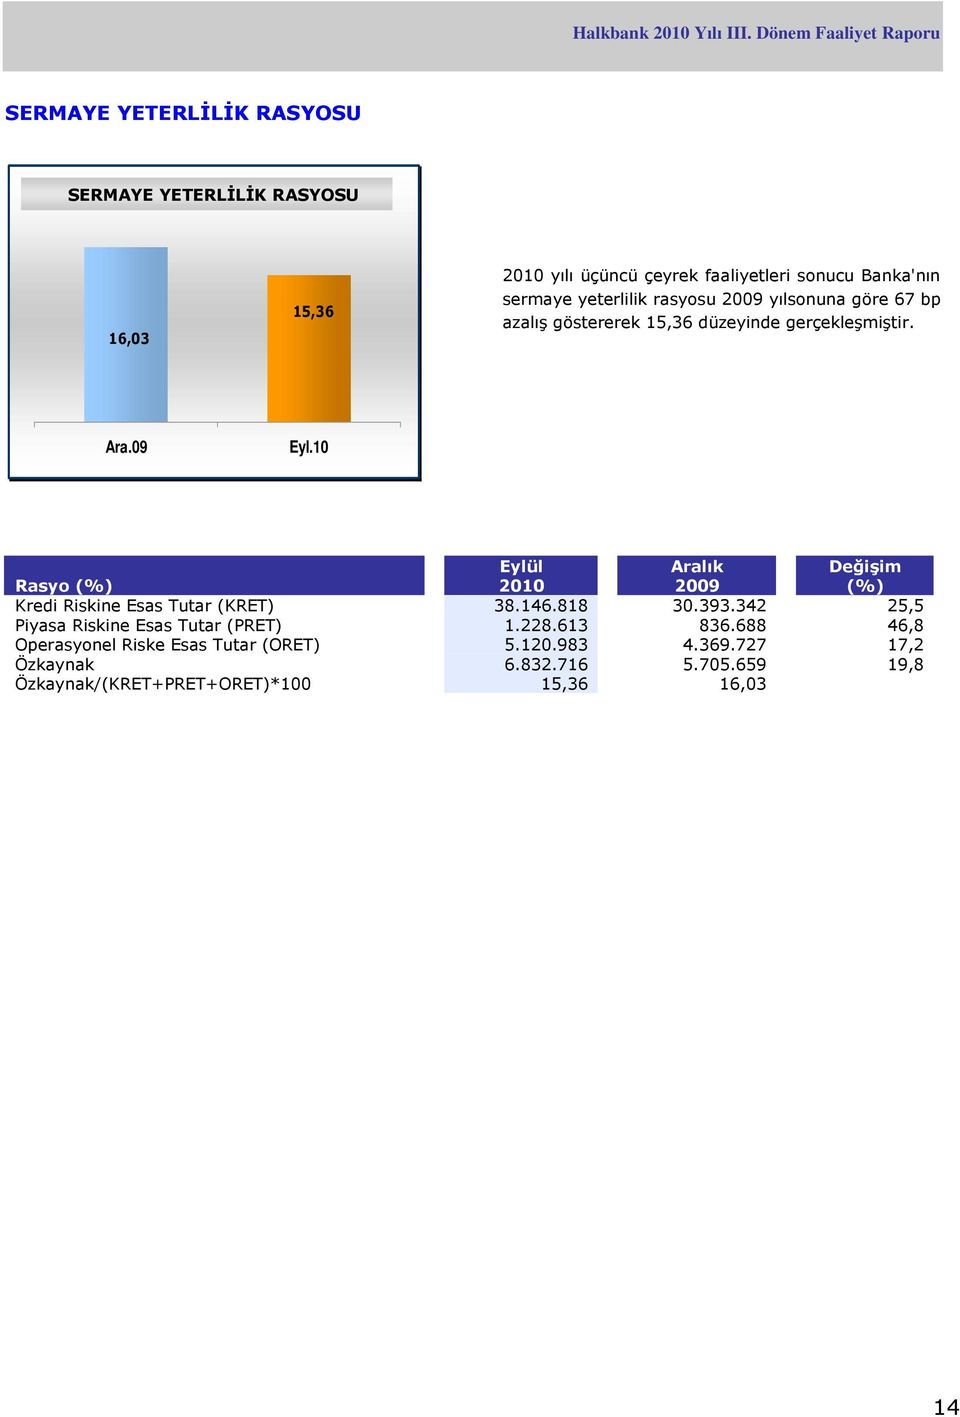 09 Rasyo (%) Eylül 2010 Aralık 2009 Değişim (%) Kredi Riskine Esas Tutar (KRET) 38.146.818 30.393.